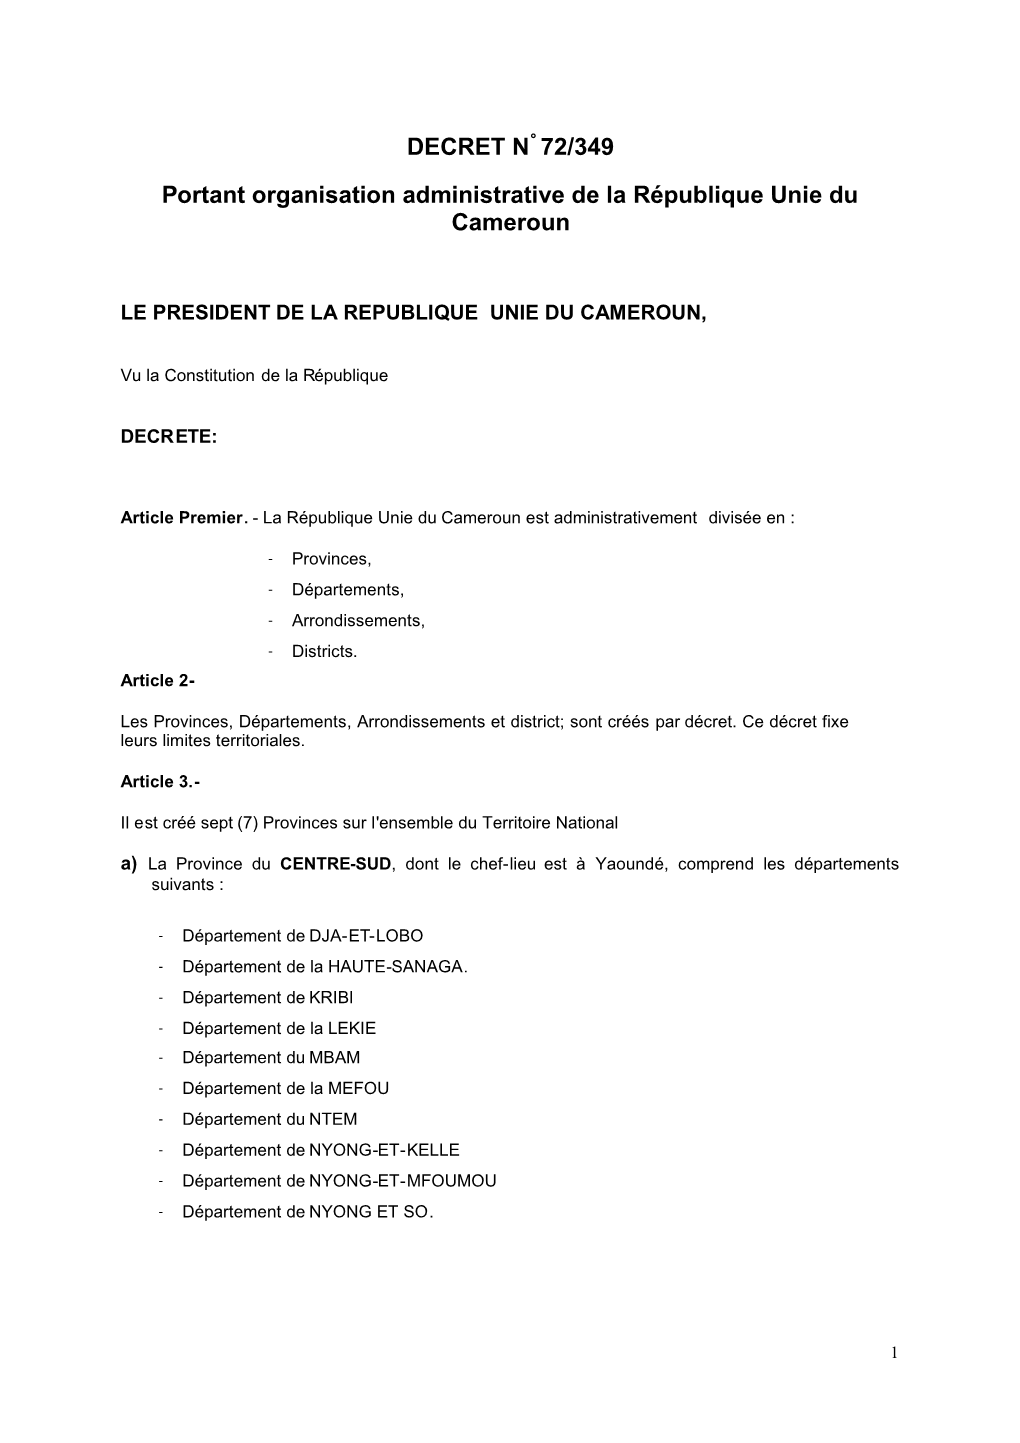 DECRET N° 72/349 Portant Organisation Administrative De La République Unie Du Cameroun